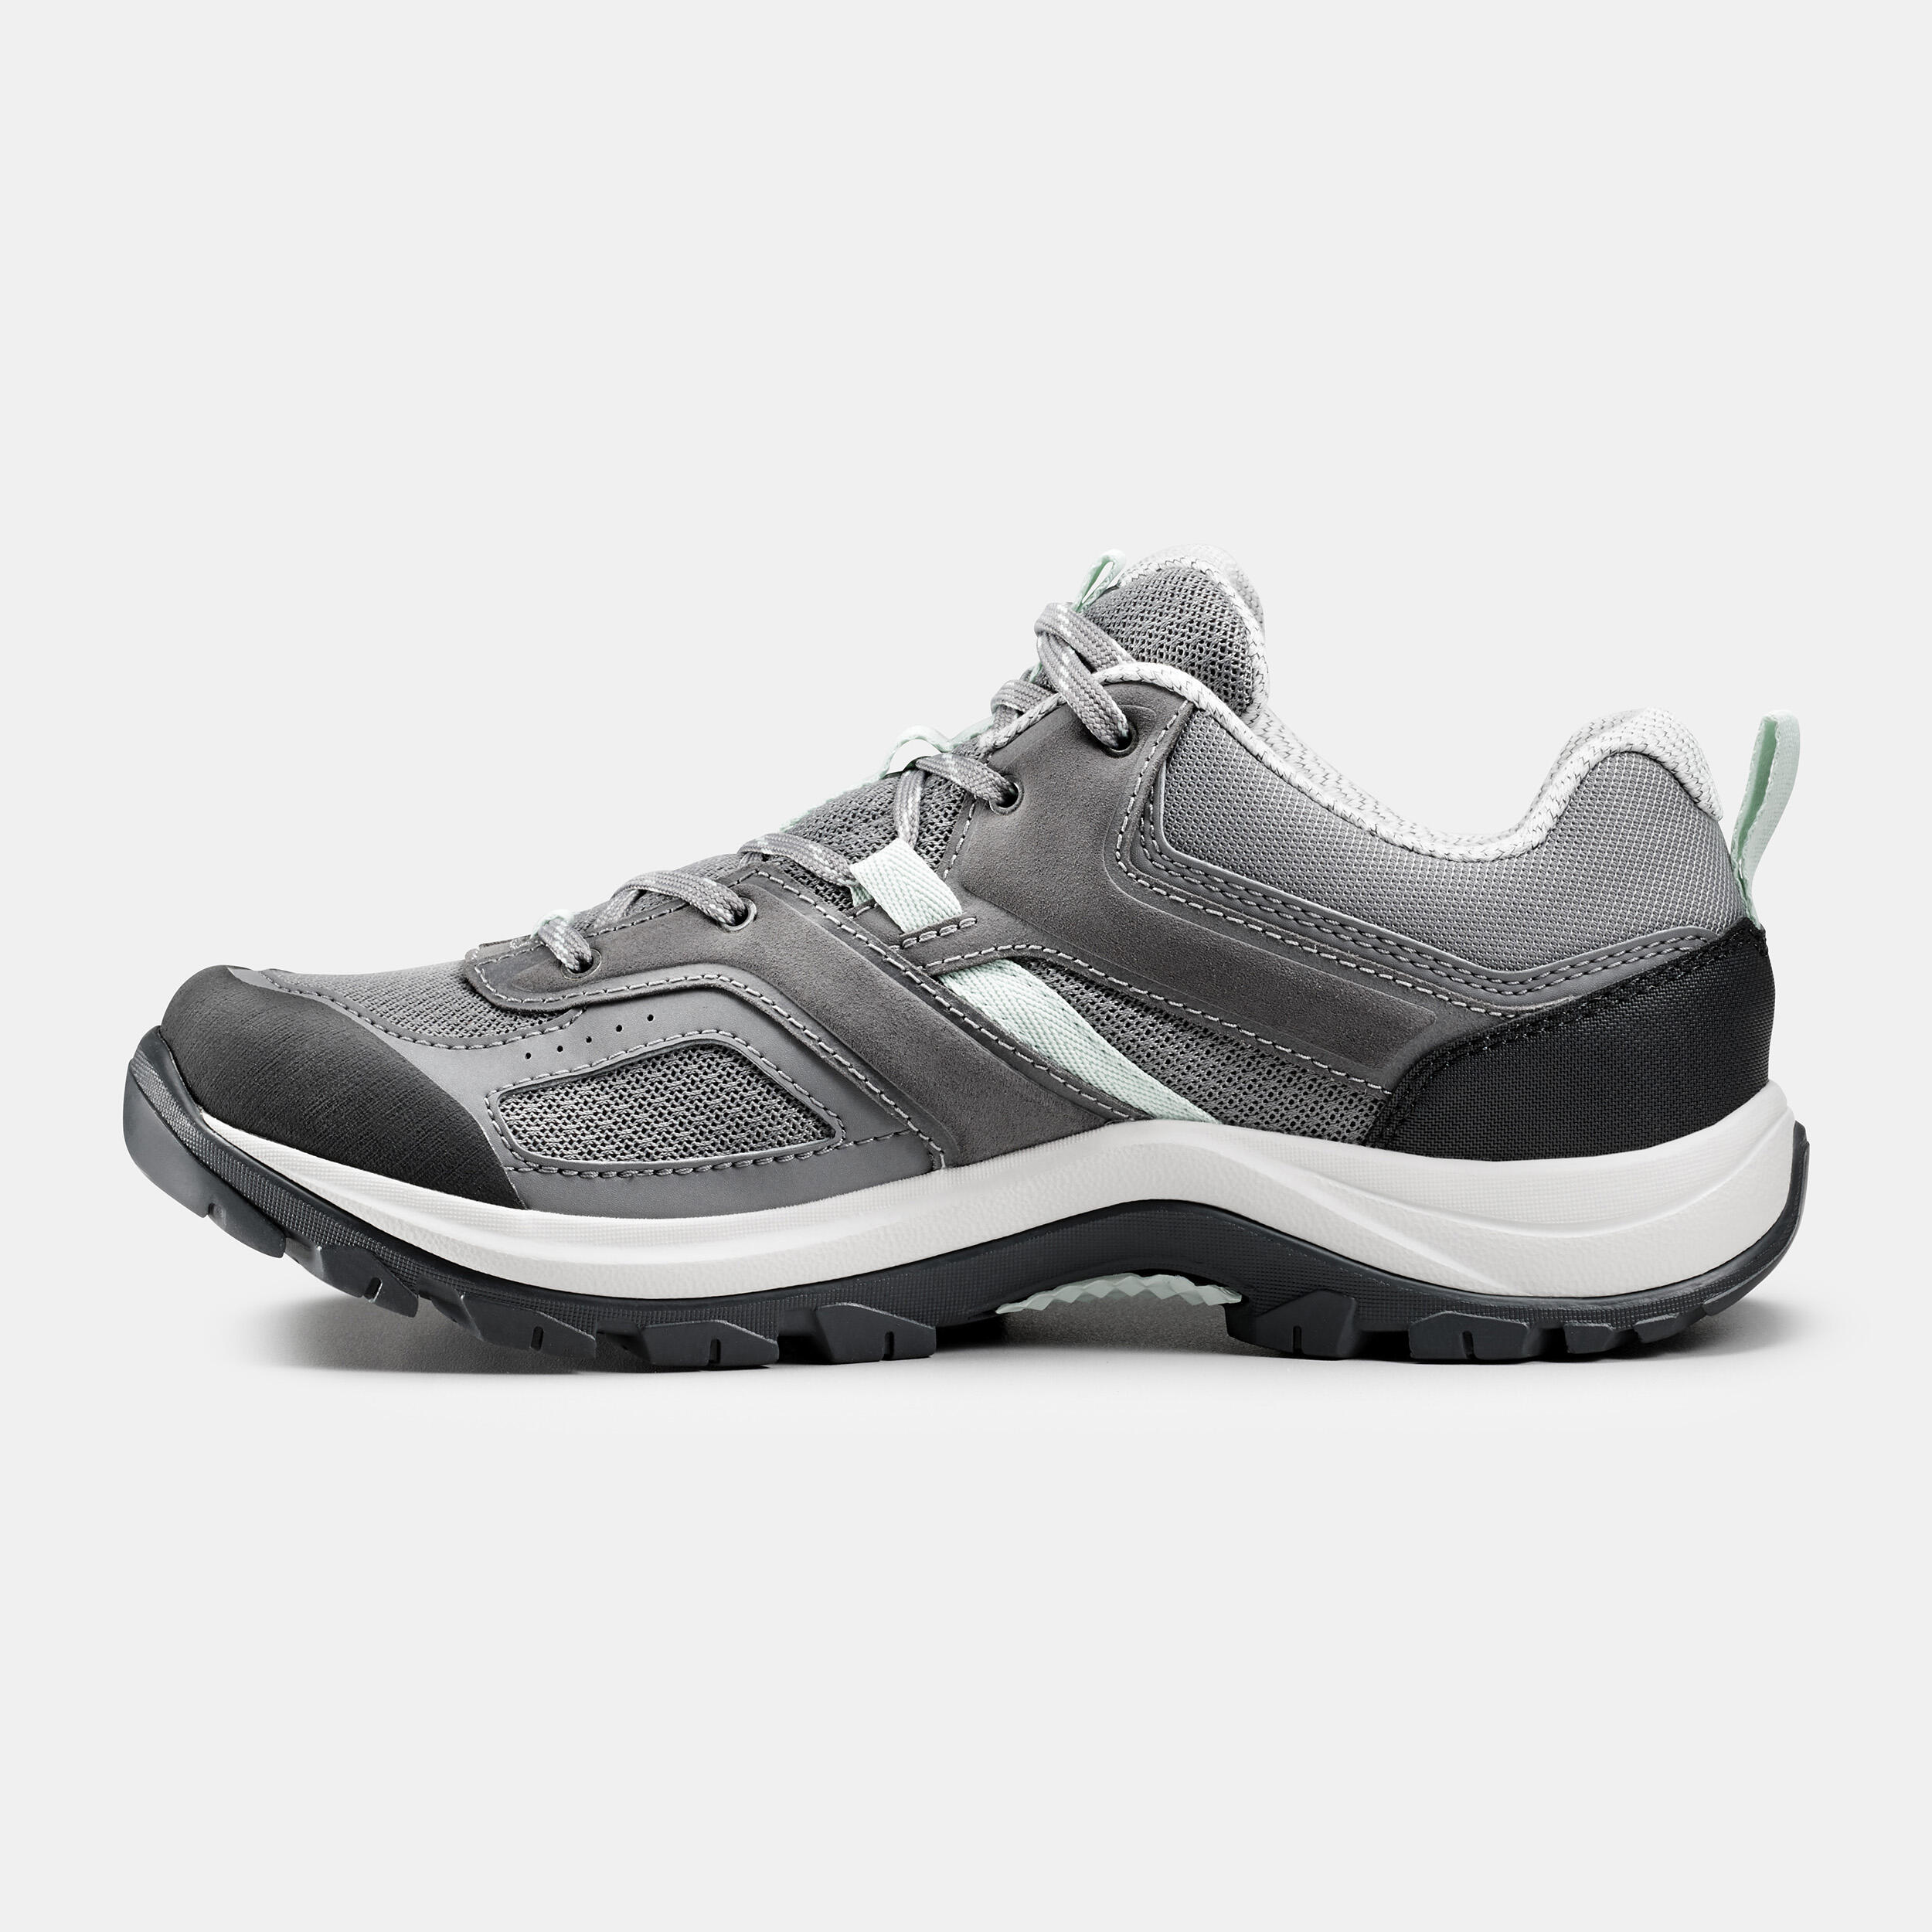 Chaussures de randonnée femme – MH 100 gris/vert - QUECHUA